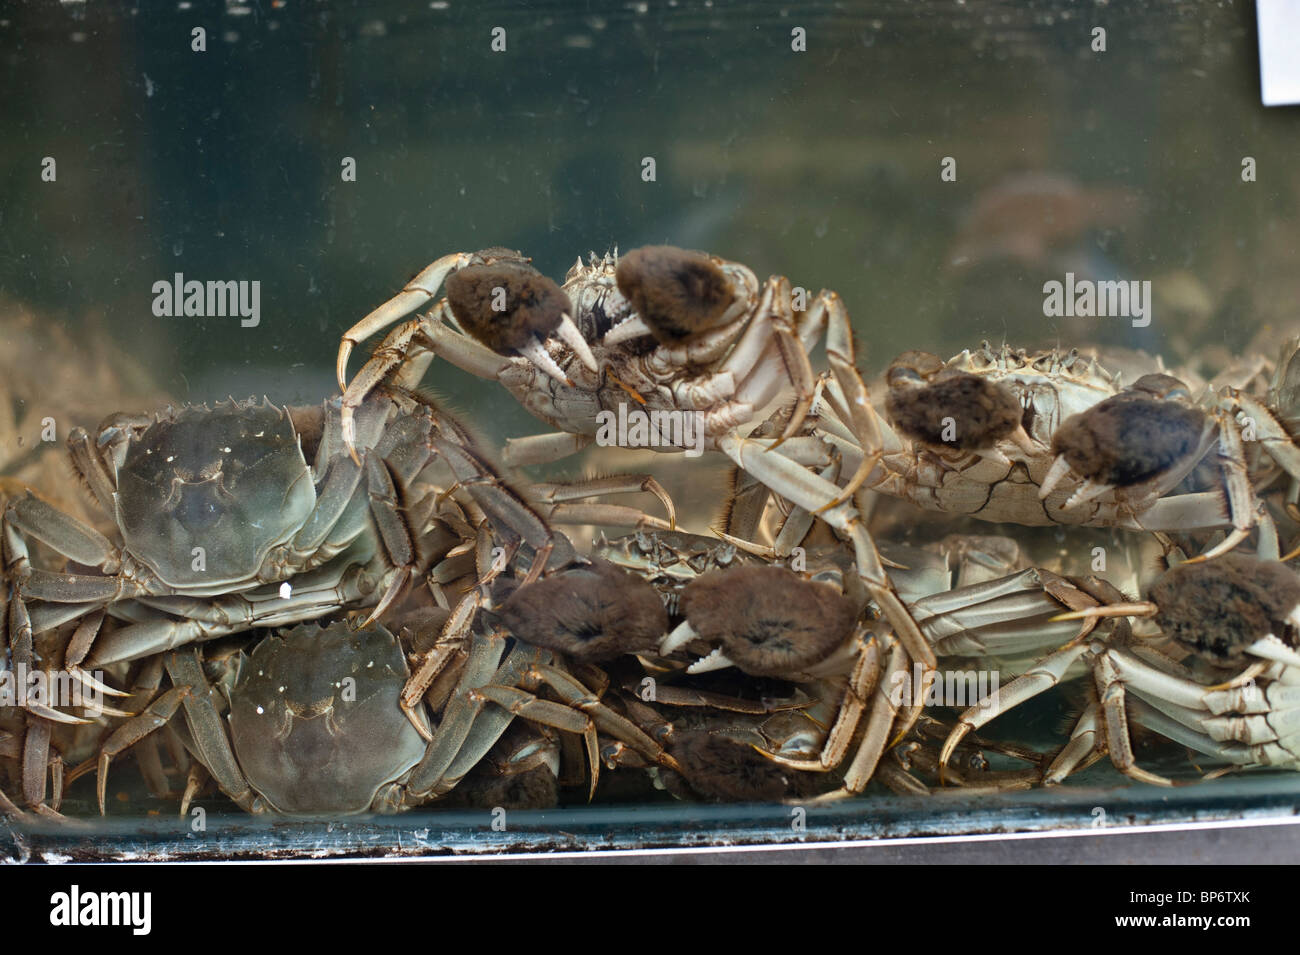 Le crabe chinois est un célèbre délicatesse à Shanghai et Hong Kong et la cuisine est très apprécié pour le crabe femelle re. Banque D'Images